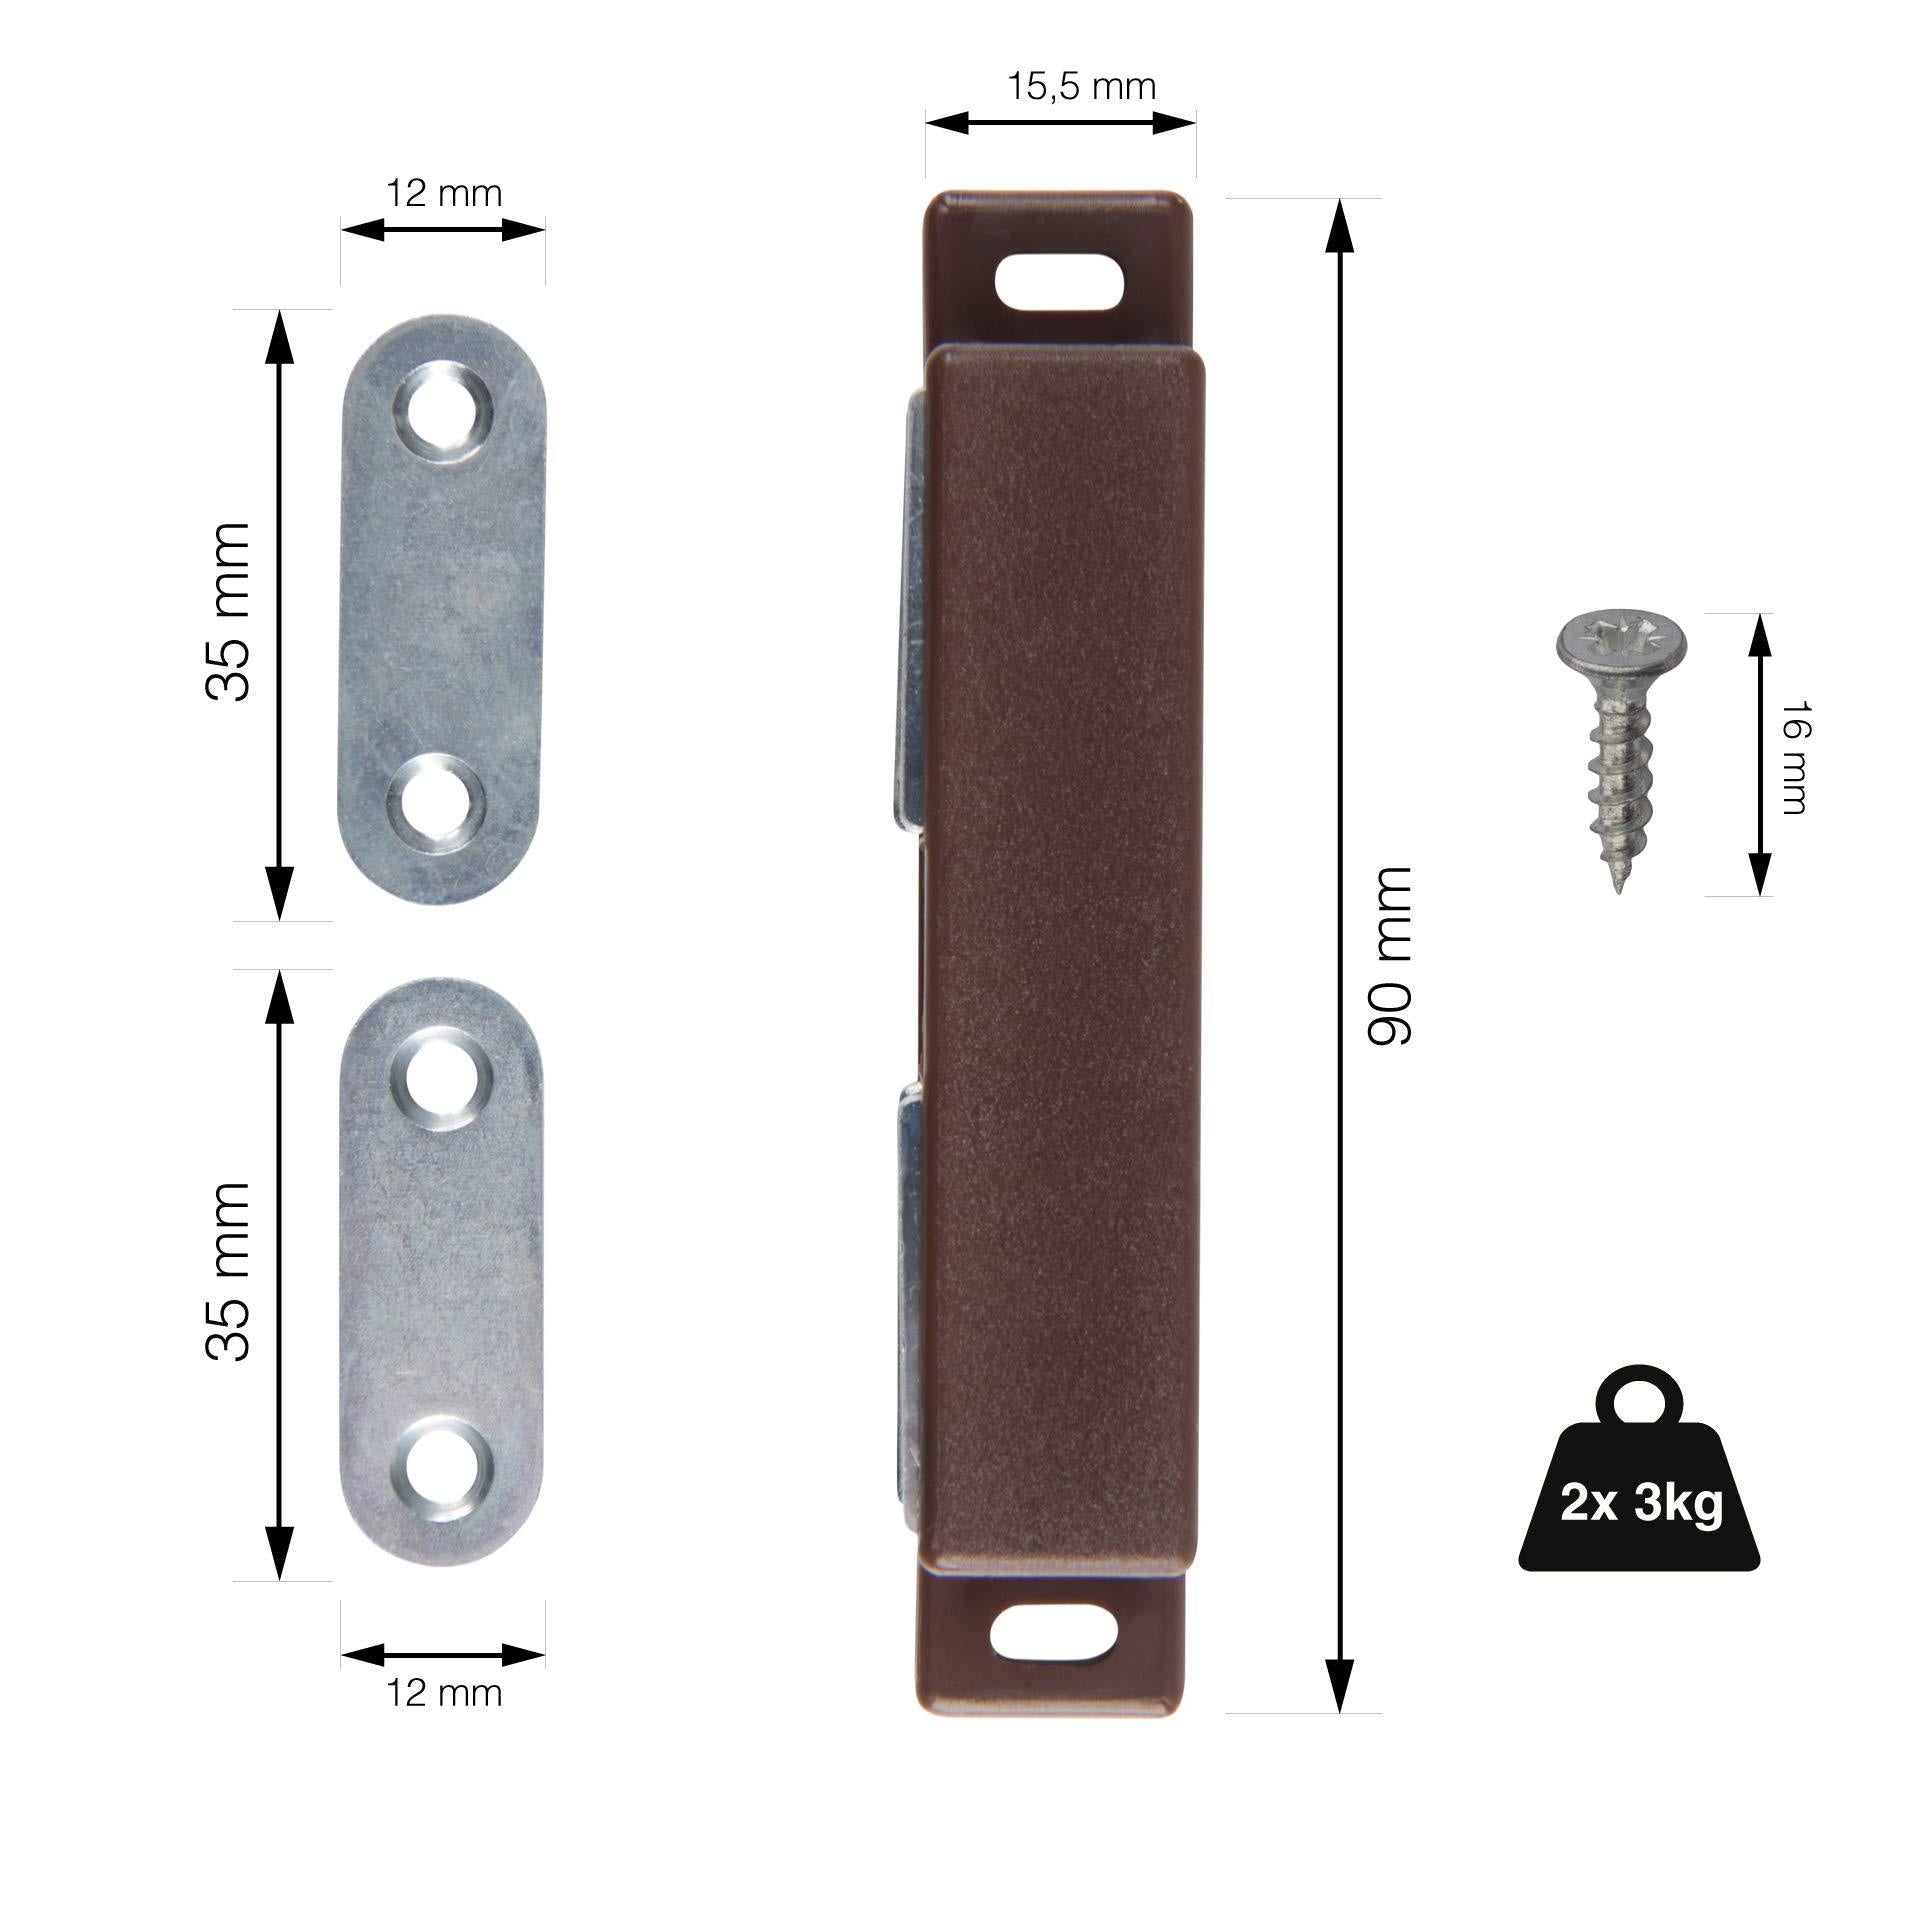 LouMaxx Magnetschnäpper stark - Haltekraft 2x3kg - 4er Set in braun – Türmagnet - Magnetverschluss - Tür Magnet - Magnetverschluss Schrank